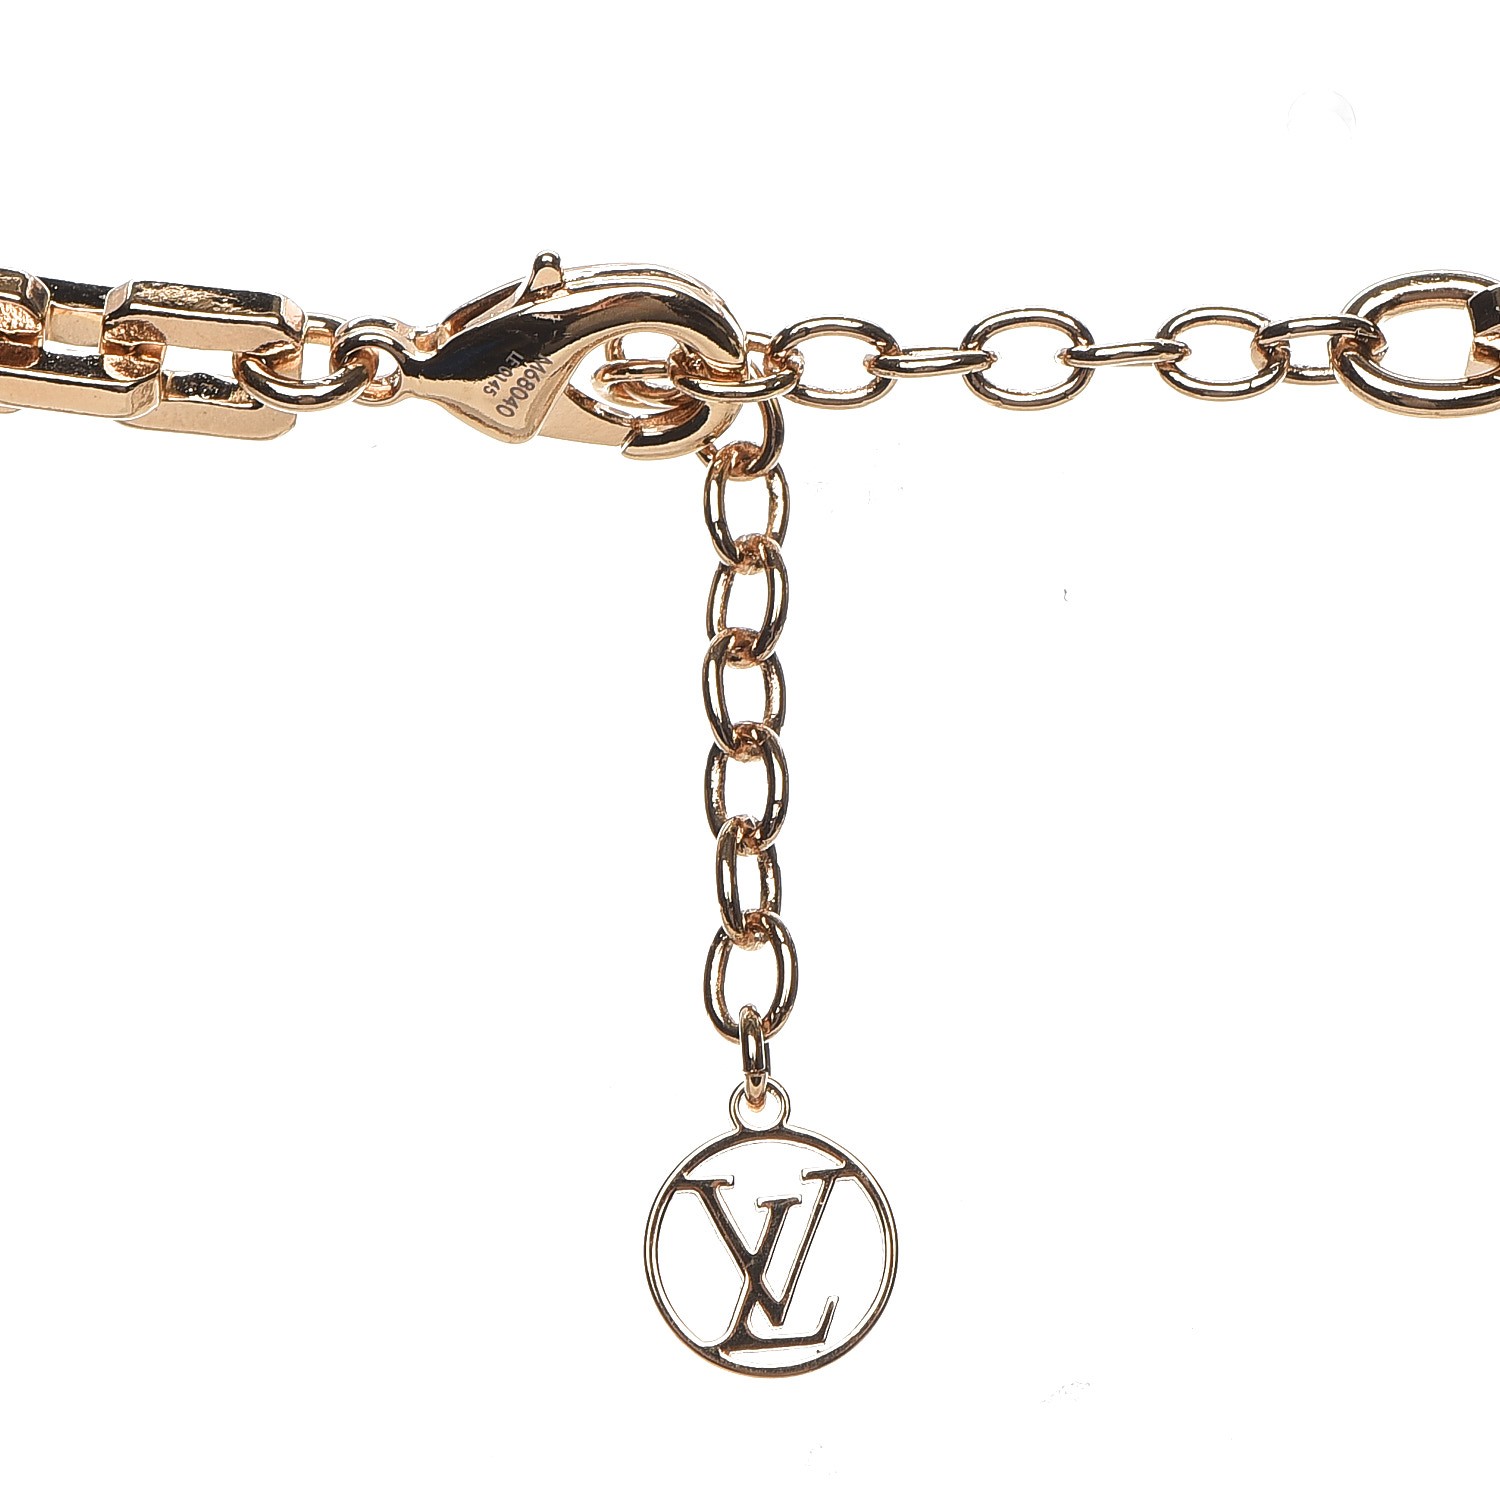 LOUIS VUITTON Trunks & Bags Key Chain Charms 13364